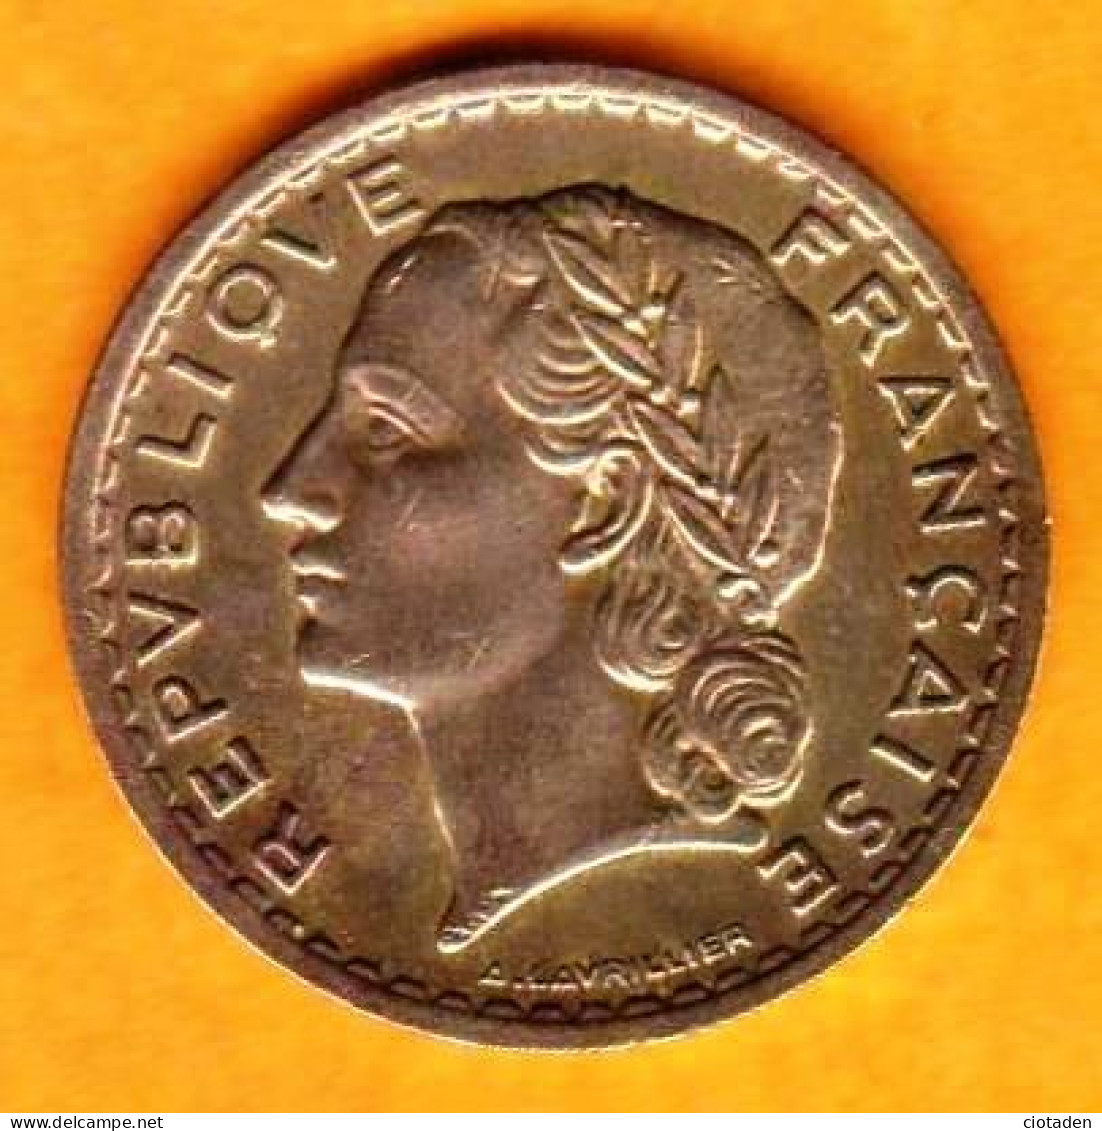 France - 5 Francs Laviller 1946 - Bronze - 5 Francs